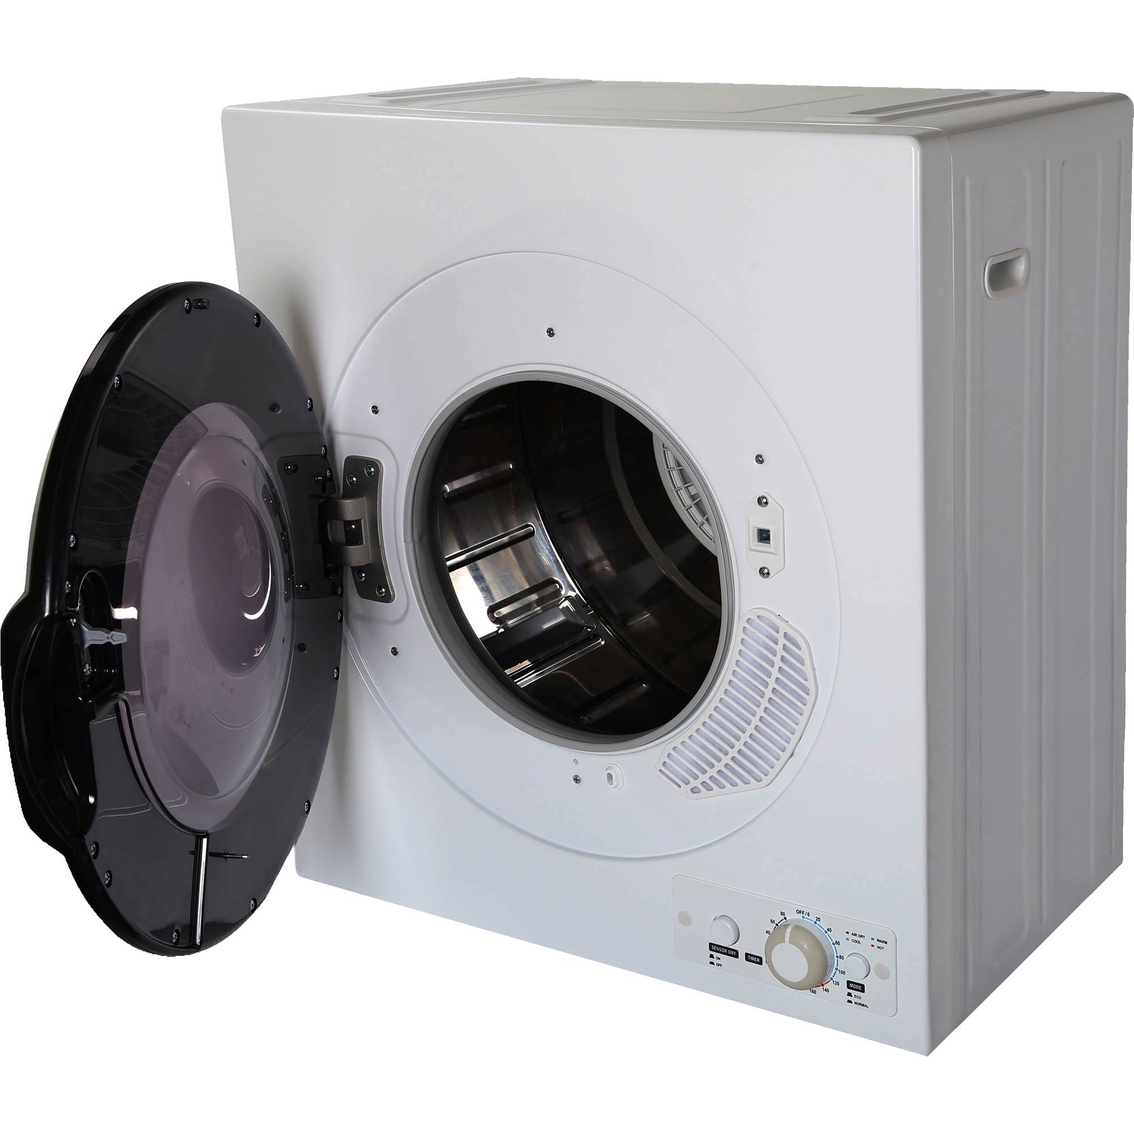 Black + Decker 2.65 cu. ft. Portable Dryer 120V - Image 4 of 10